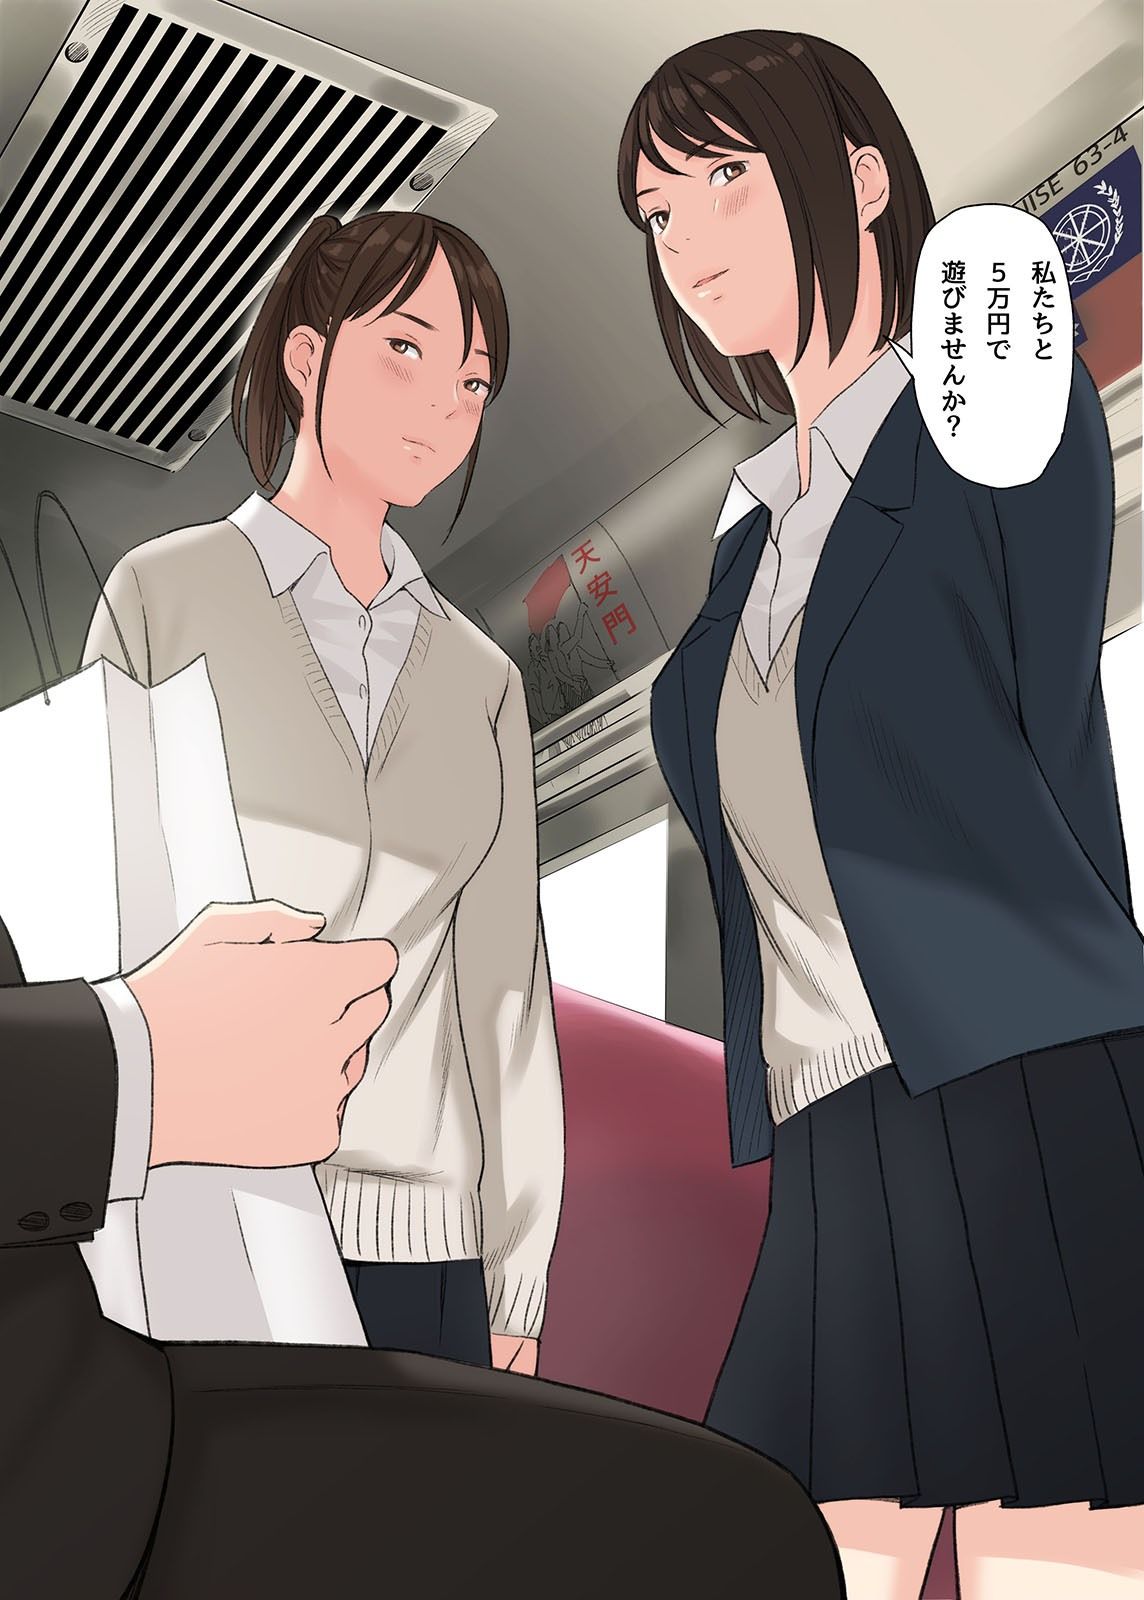 【エロ漫画無料大全集】【エロ漫画JK】ローカル列車で出会った制服女子にパンツ見せられ煽られて…